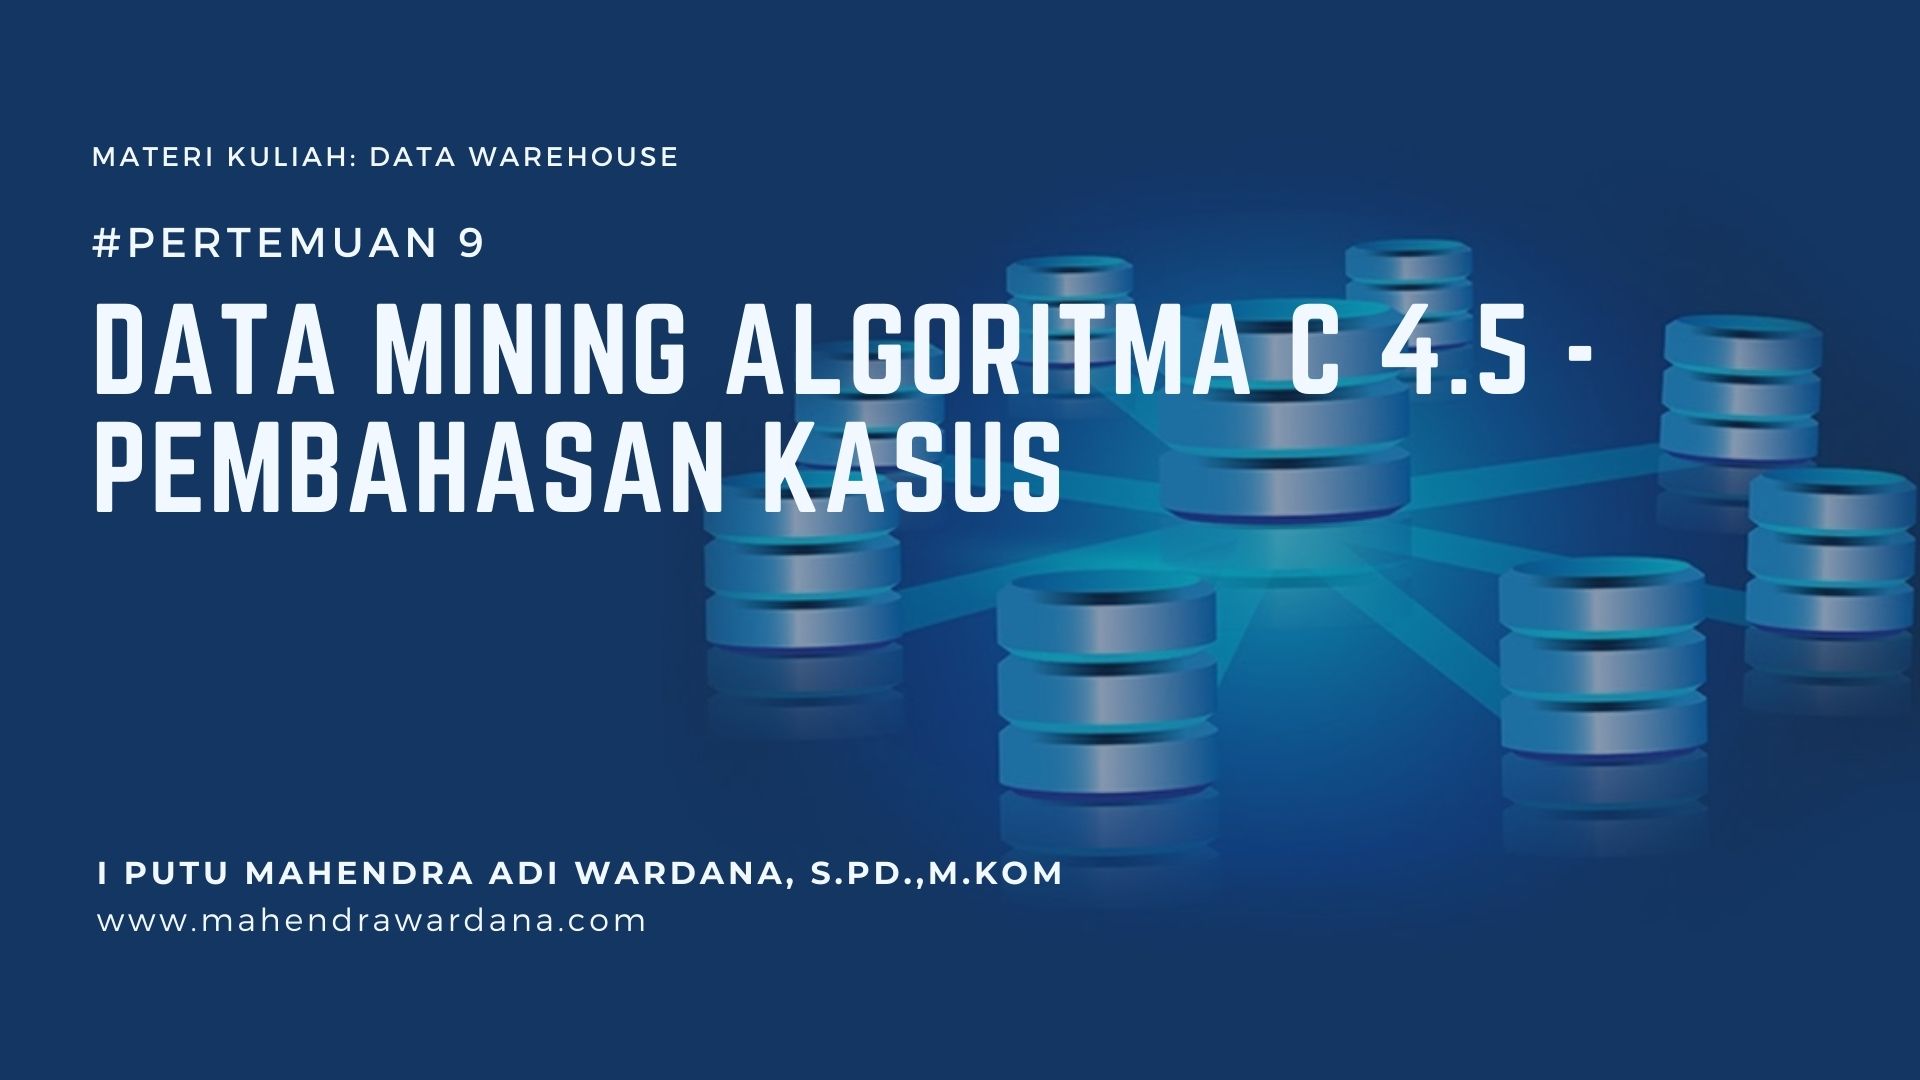 Pertemuan 9 - Data Mining Algoritma C 4.5 - Pembahasan Kasus